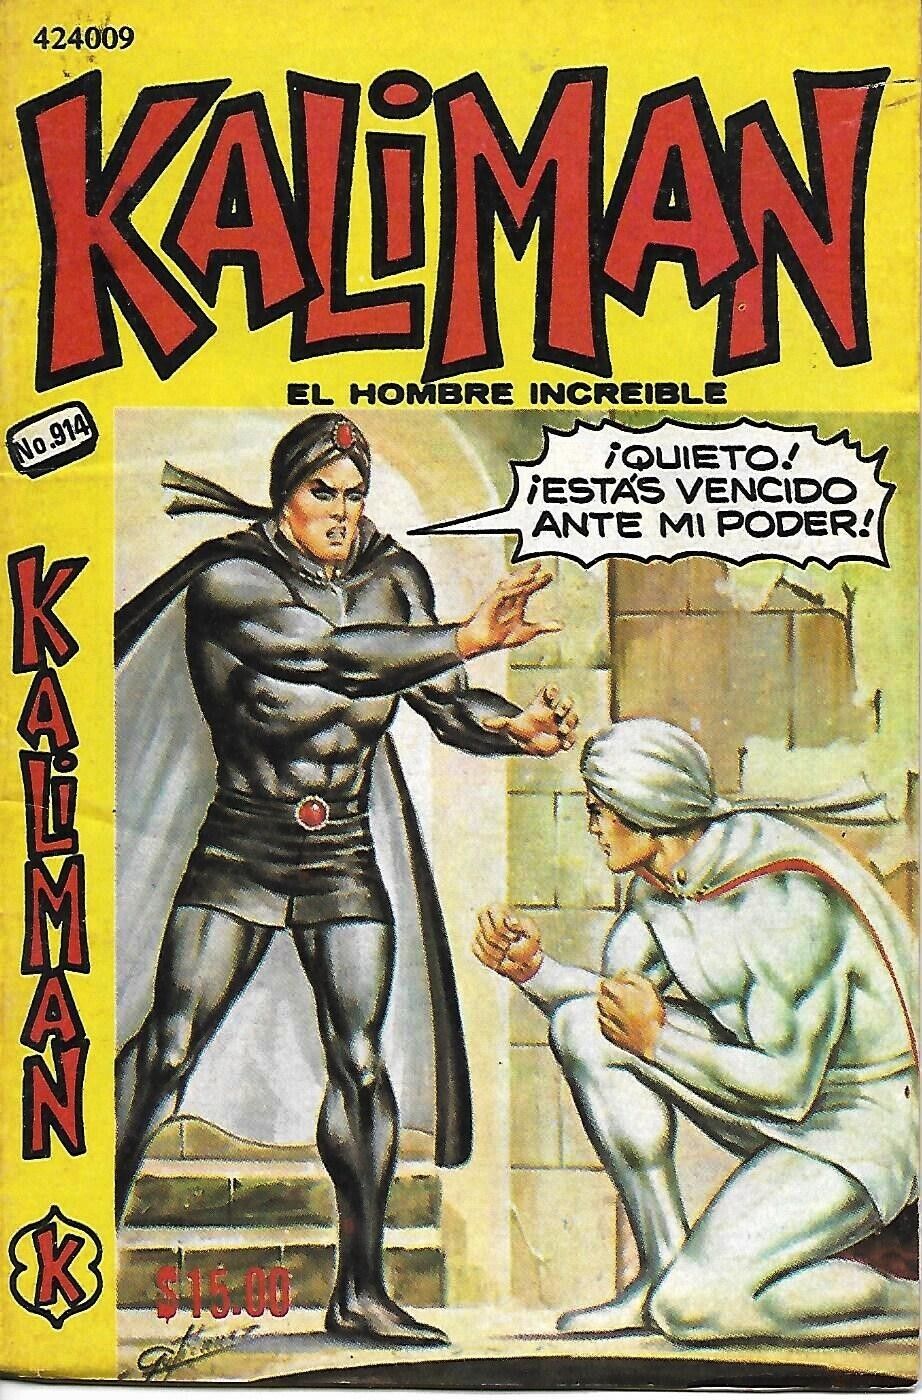 Kaliman El Hombre Increible #914 - Junio 3, 1983 - Mexico